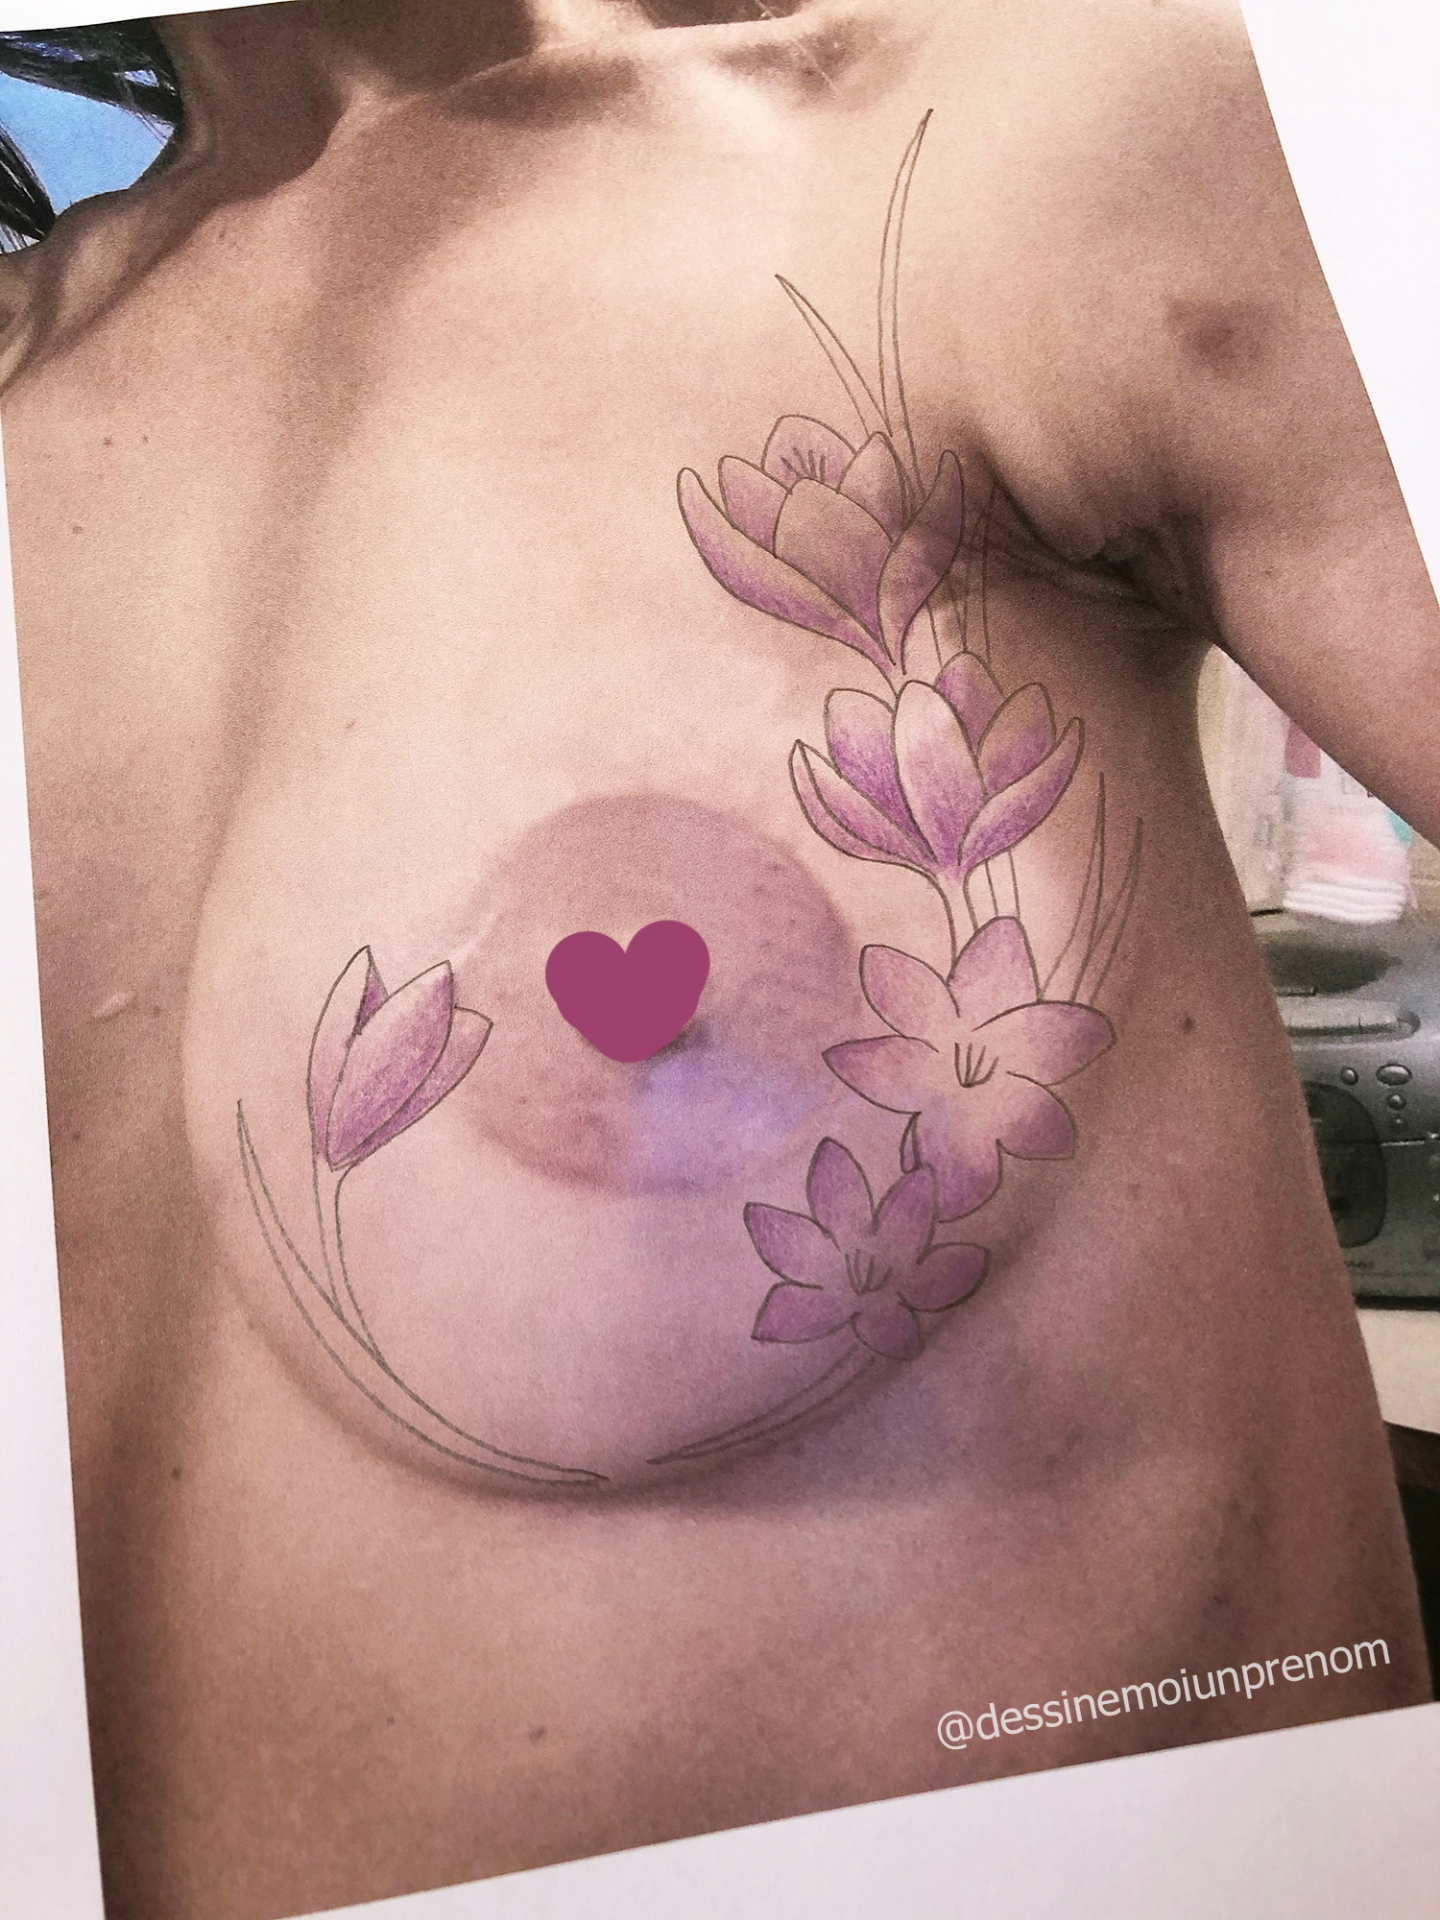 Dessin de tatouage après mastectomie et reconstruction mammaire